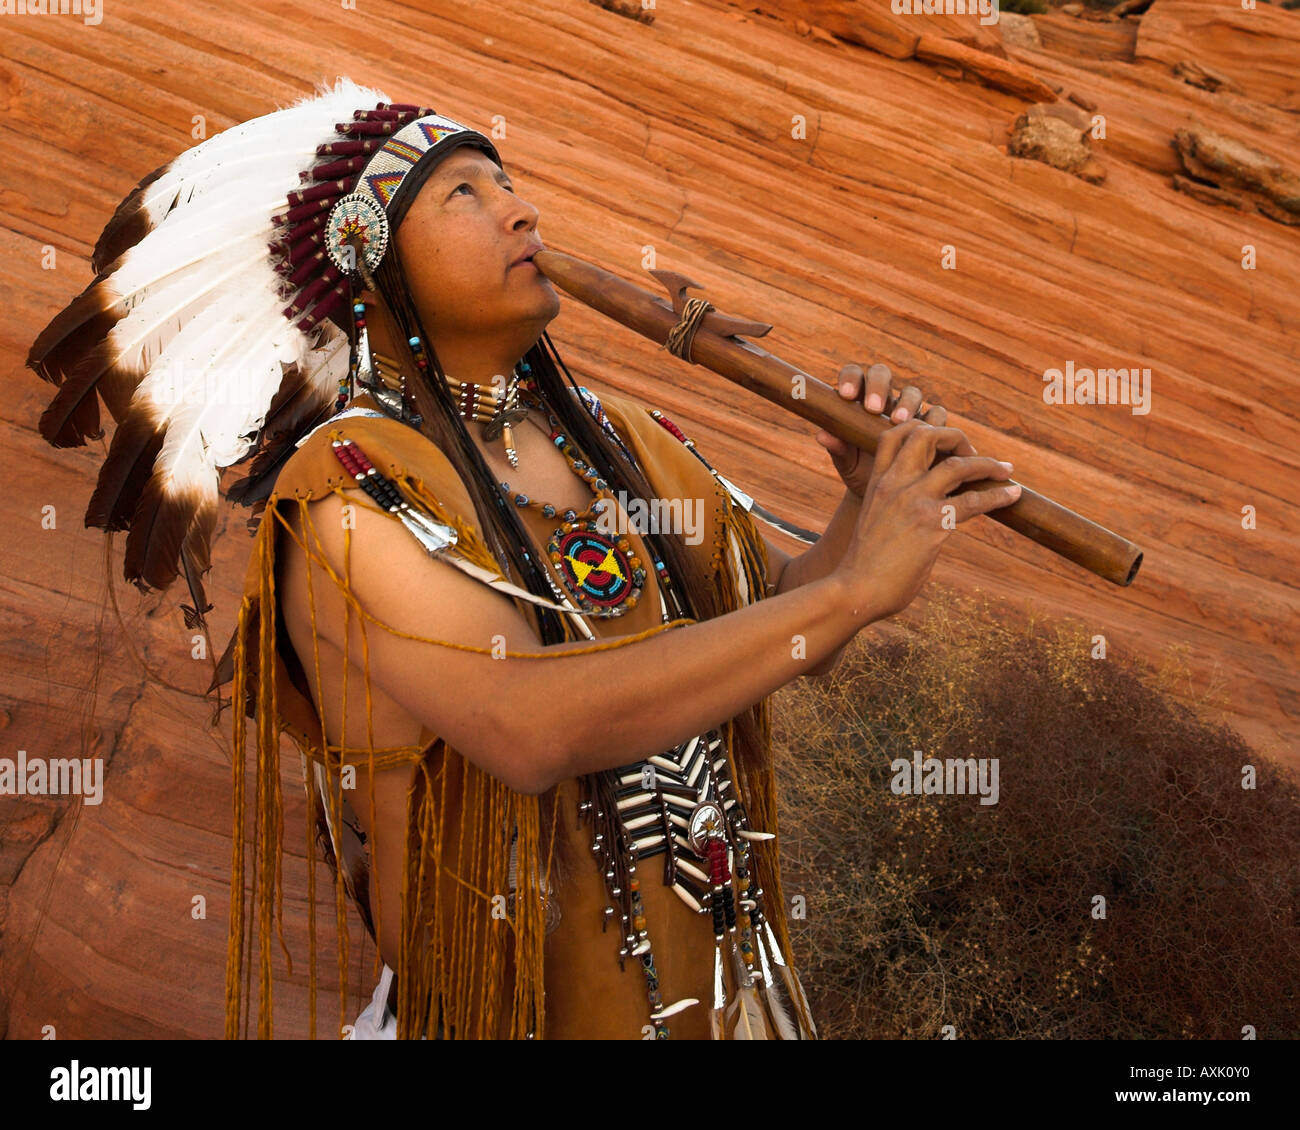 Native American Indian man personne avec équipement culturel plumes coiffe uniforme de la lecture de musique sifflet corne instrument Banque D'Images